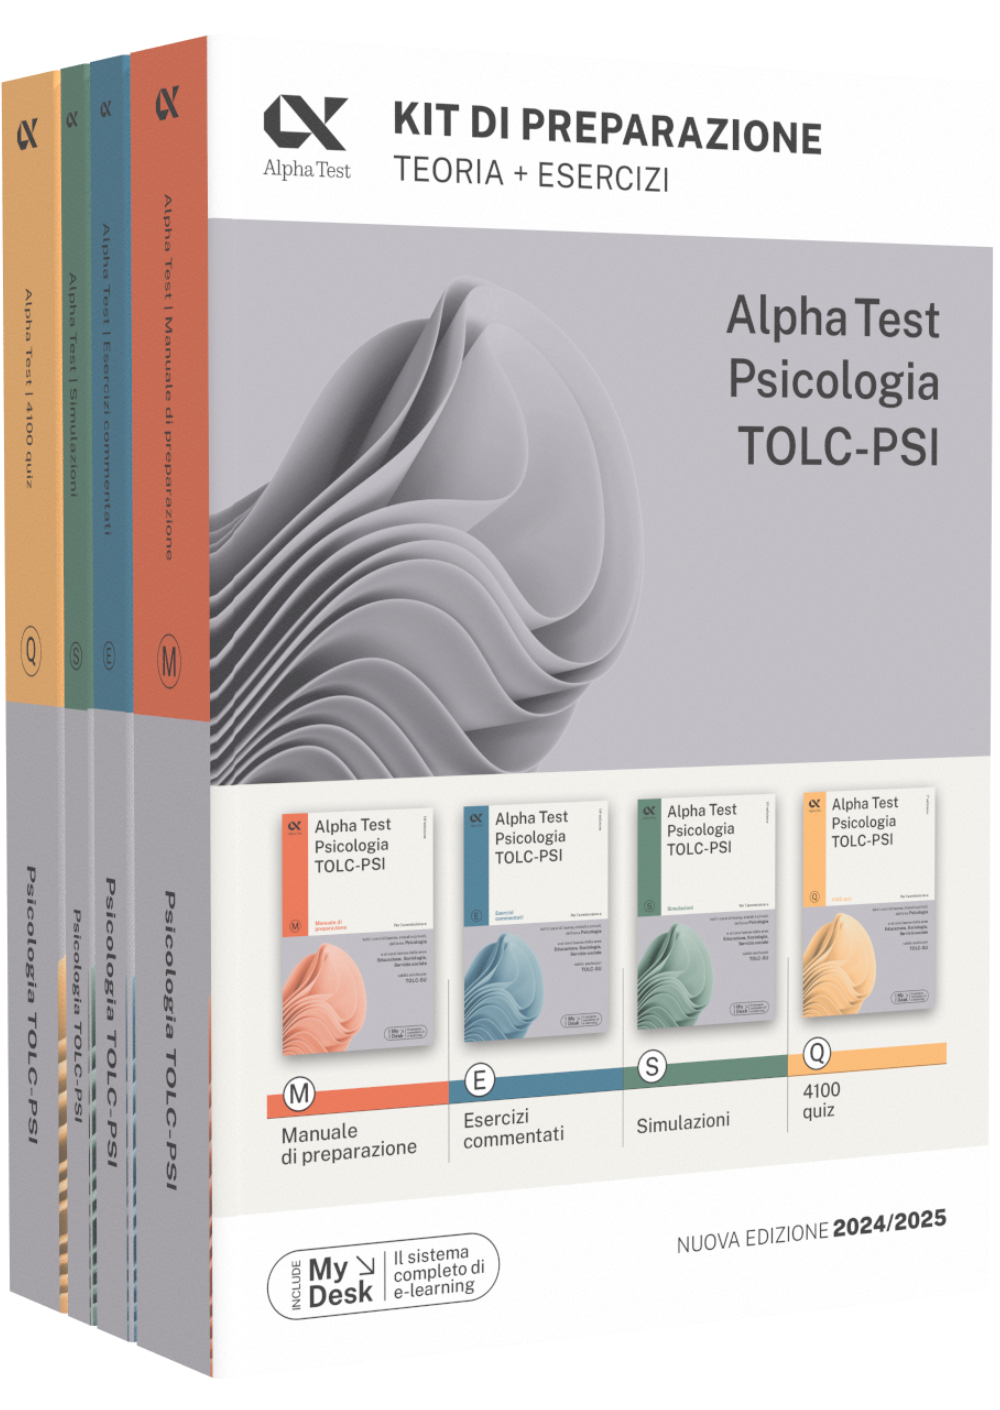 Alpha-Test-Psicologia-TOLC-PSI-Kit-di-preparazione-978-88-483-2701-5.png